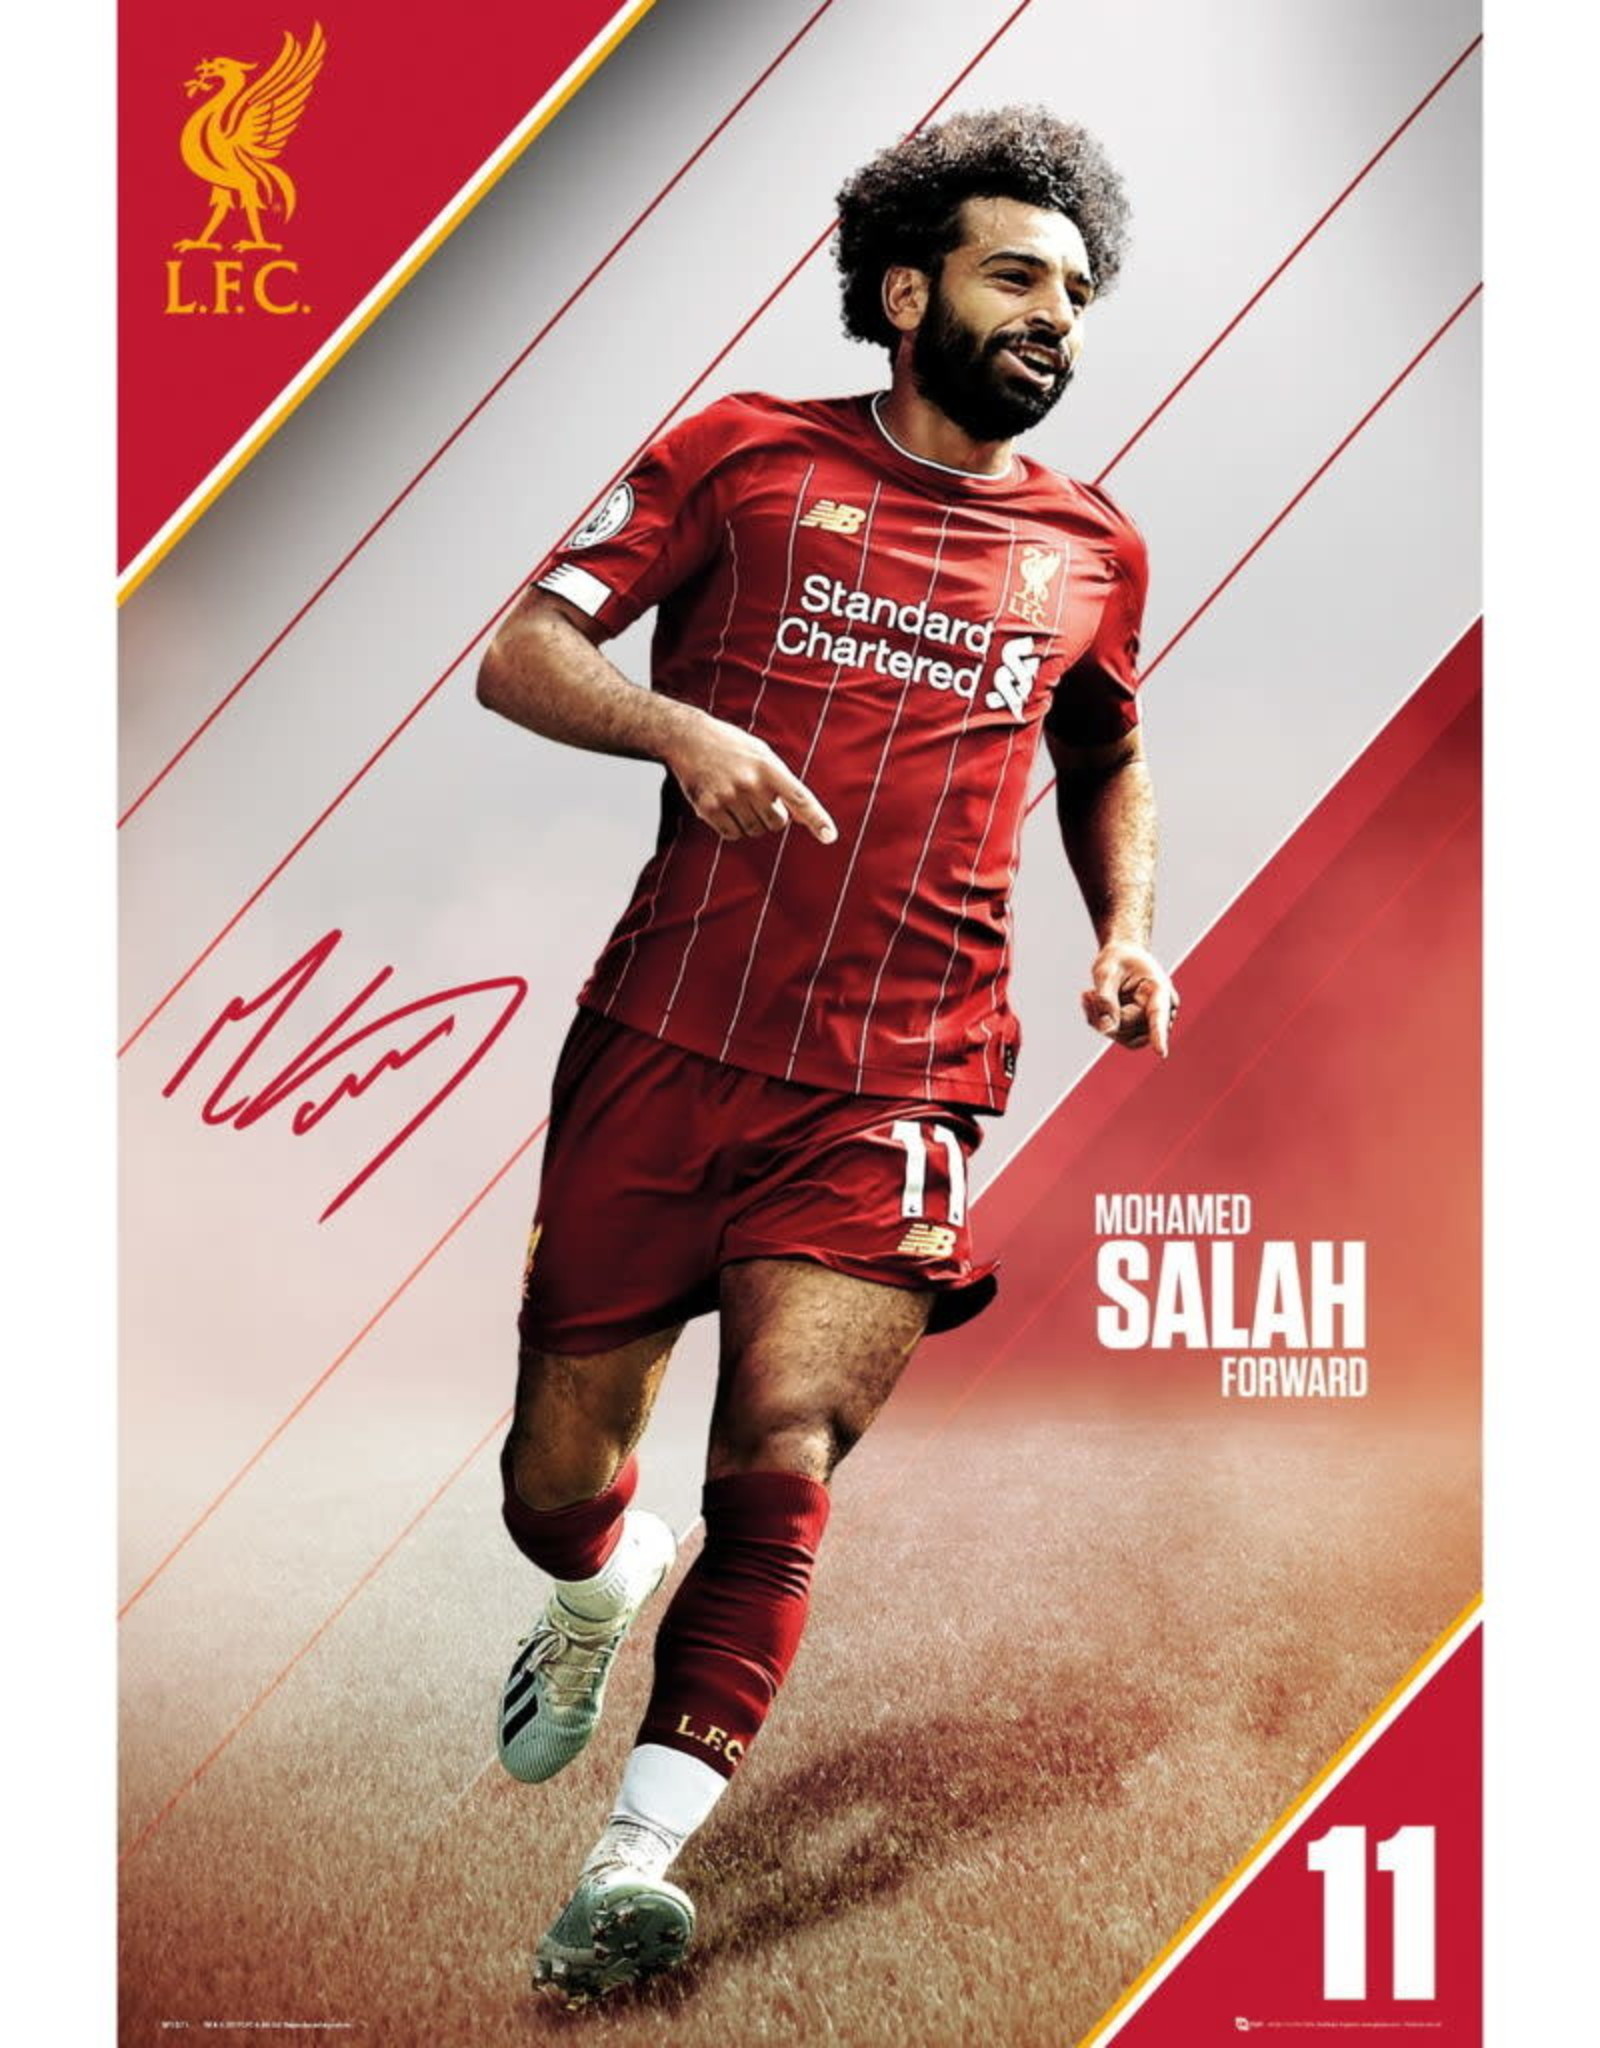 Mohamed Salah 2020 Poster